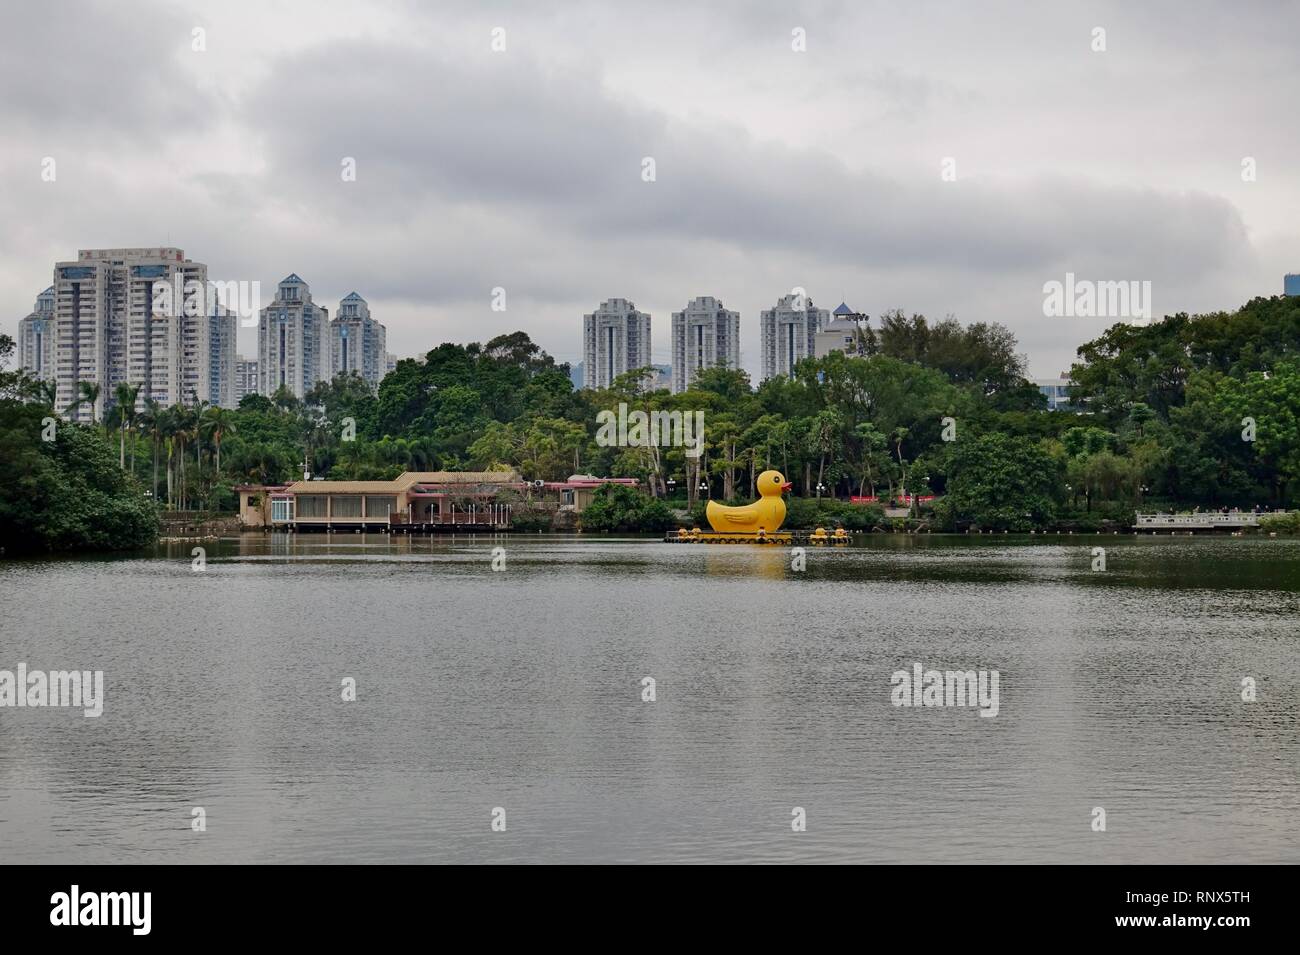 SHENZHEN, China-23 Dez 2018 - Blick auf riesige gelbe Ente Boote auf einem See in: Lizhi (Litschi, Litschi) Park in Shenzhen, Guangdong, China. Stockfoto